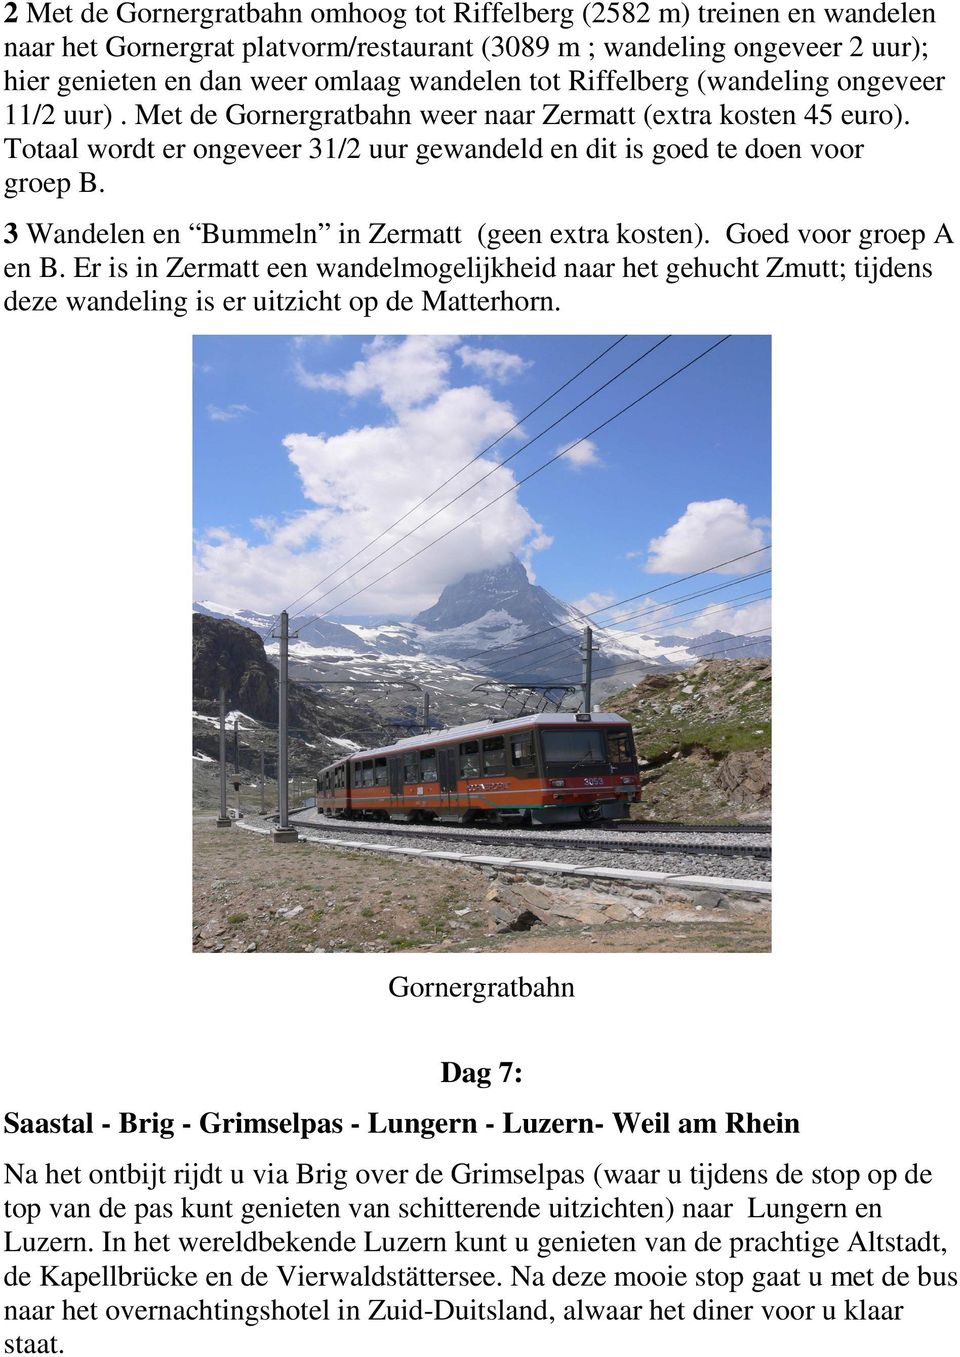 3 Wandelen en Bummeln in Zermatt (geen extra kosten). Goed voor groep A en B. Er is in Zermatt een wandelmogelijkheid naar het gehucht Zmutt; tijdens deze wandeling is er uitzicht op de Matterhorn.